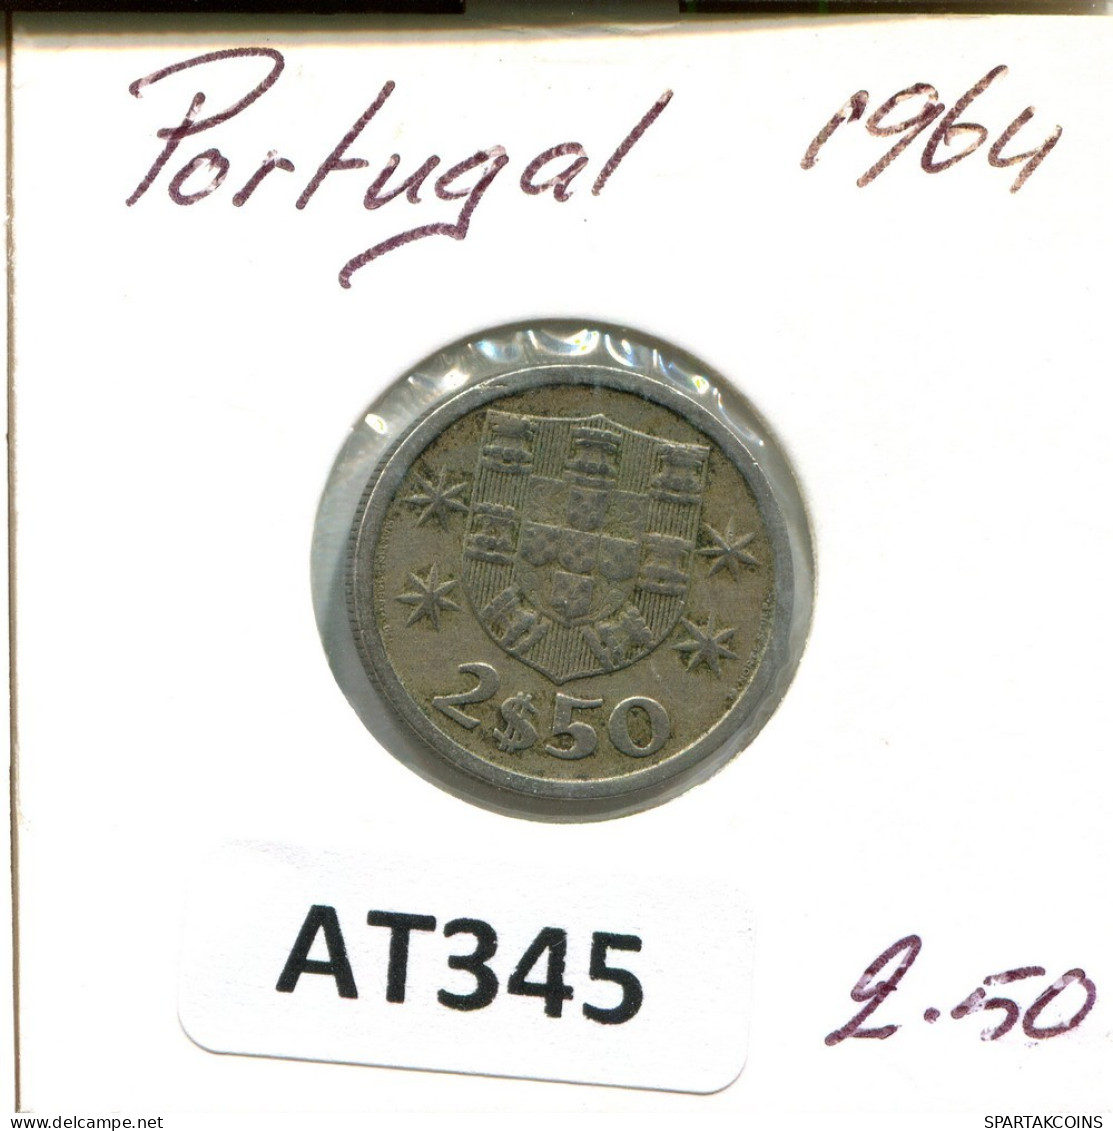 2$50 ESCUDOS 1964 PORTUGAL Münze #AT345.D.A - Portogallo